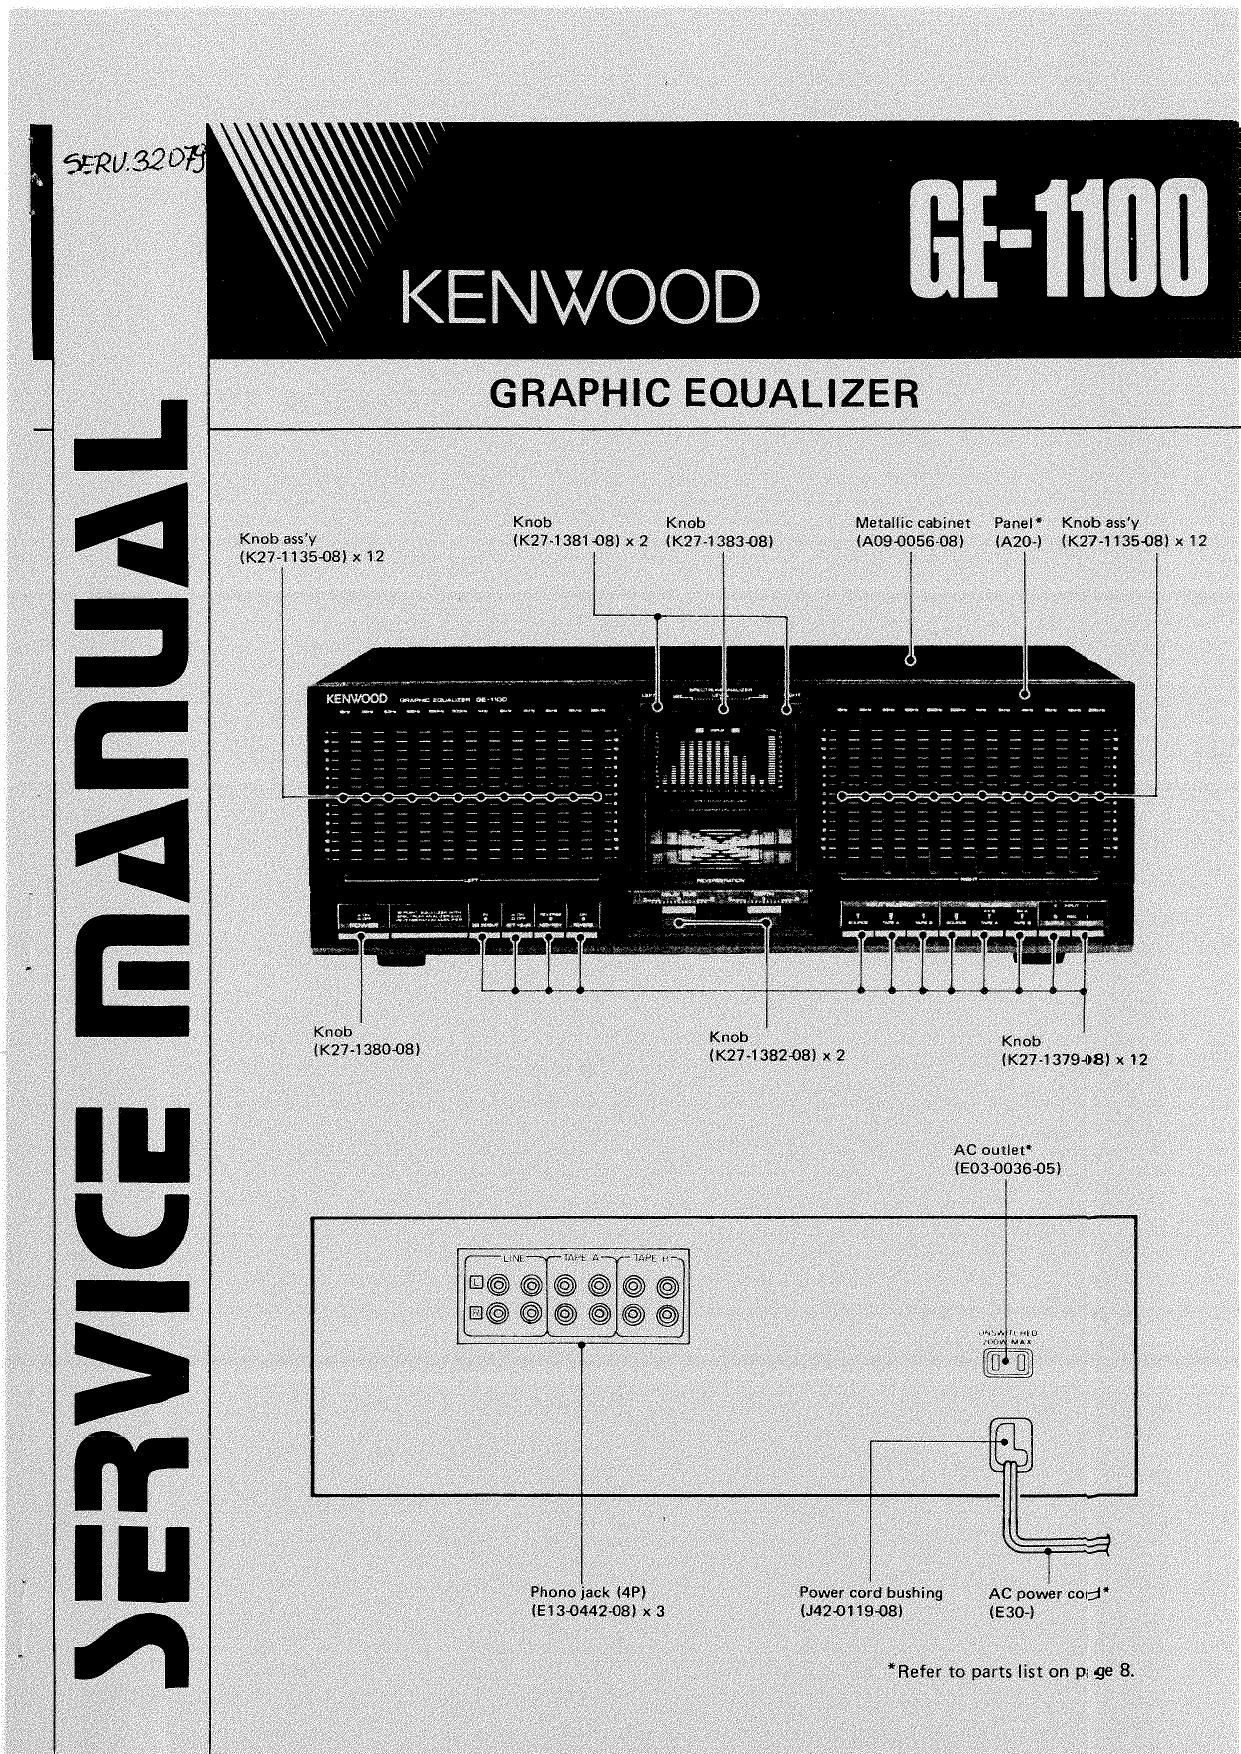 Kenwood GE 1100 Service Manual